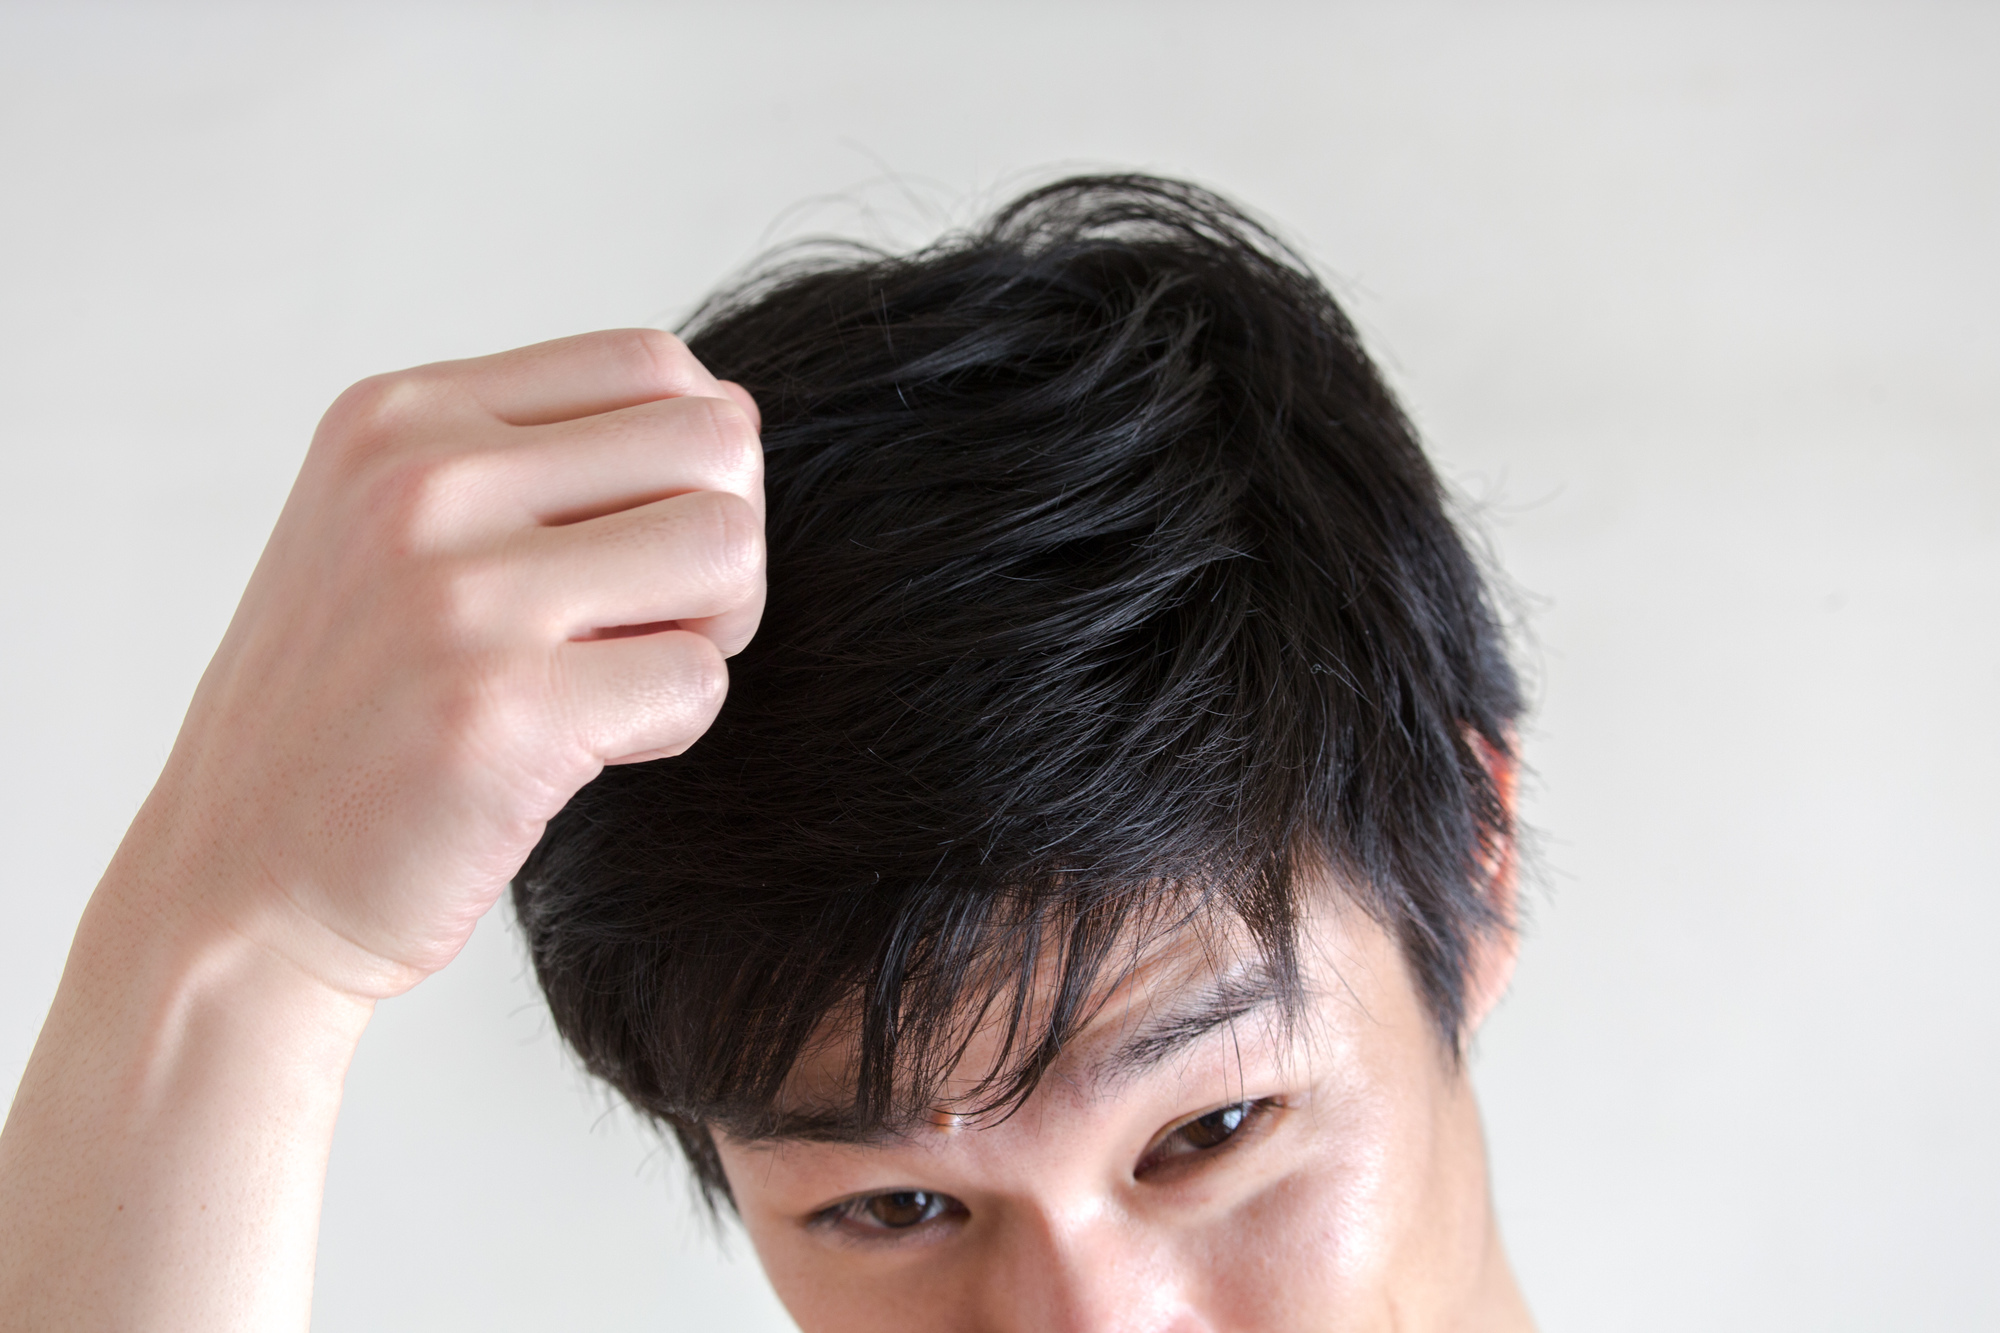 パサパサ髪にならないための予防・対策方法